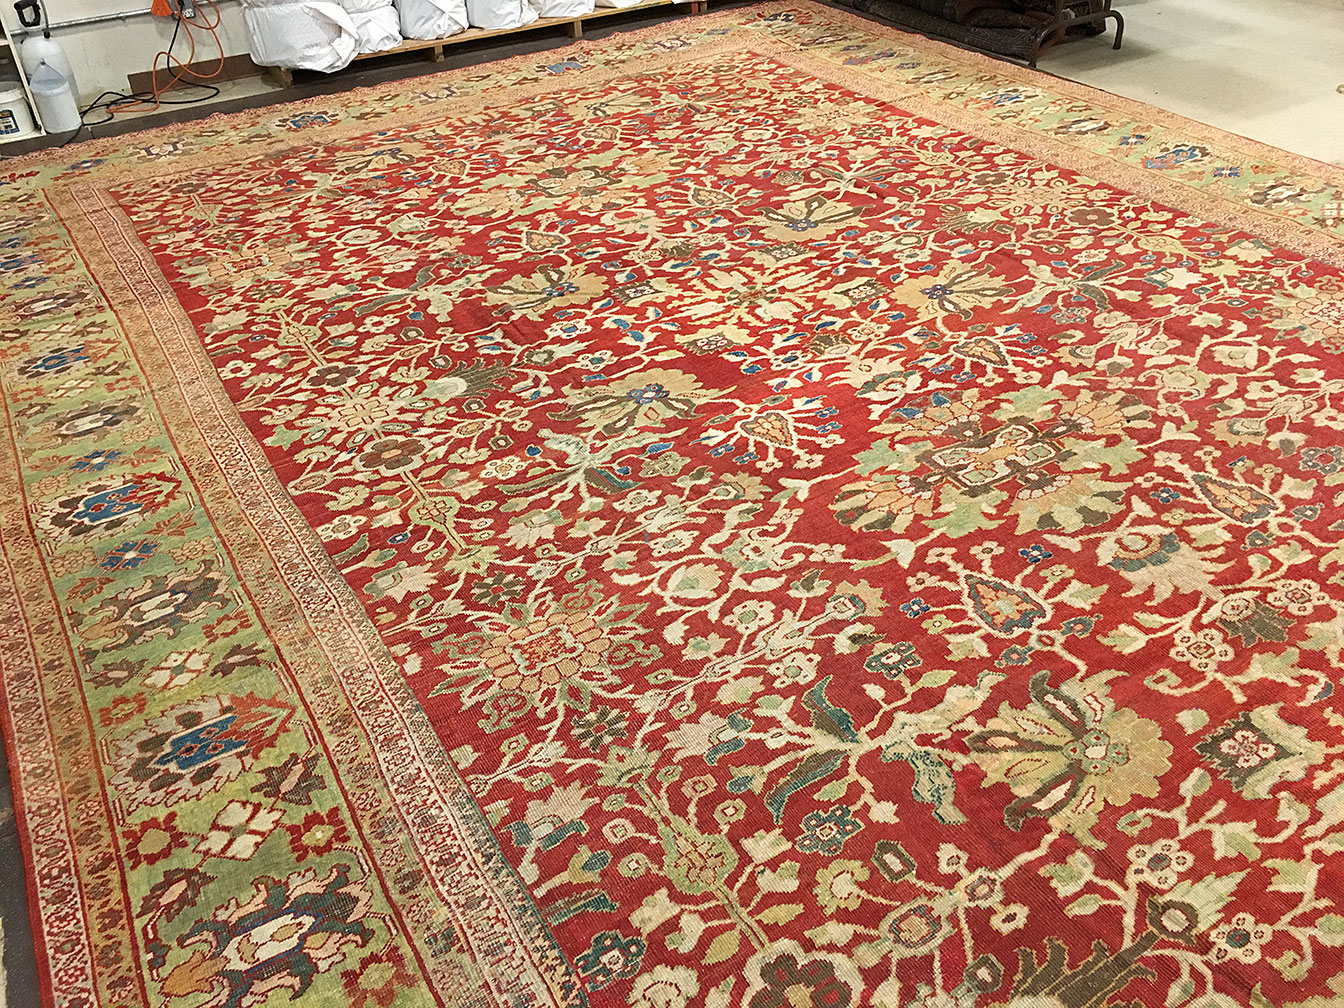 Antique sultan abad Carpet - # 52627